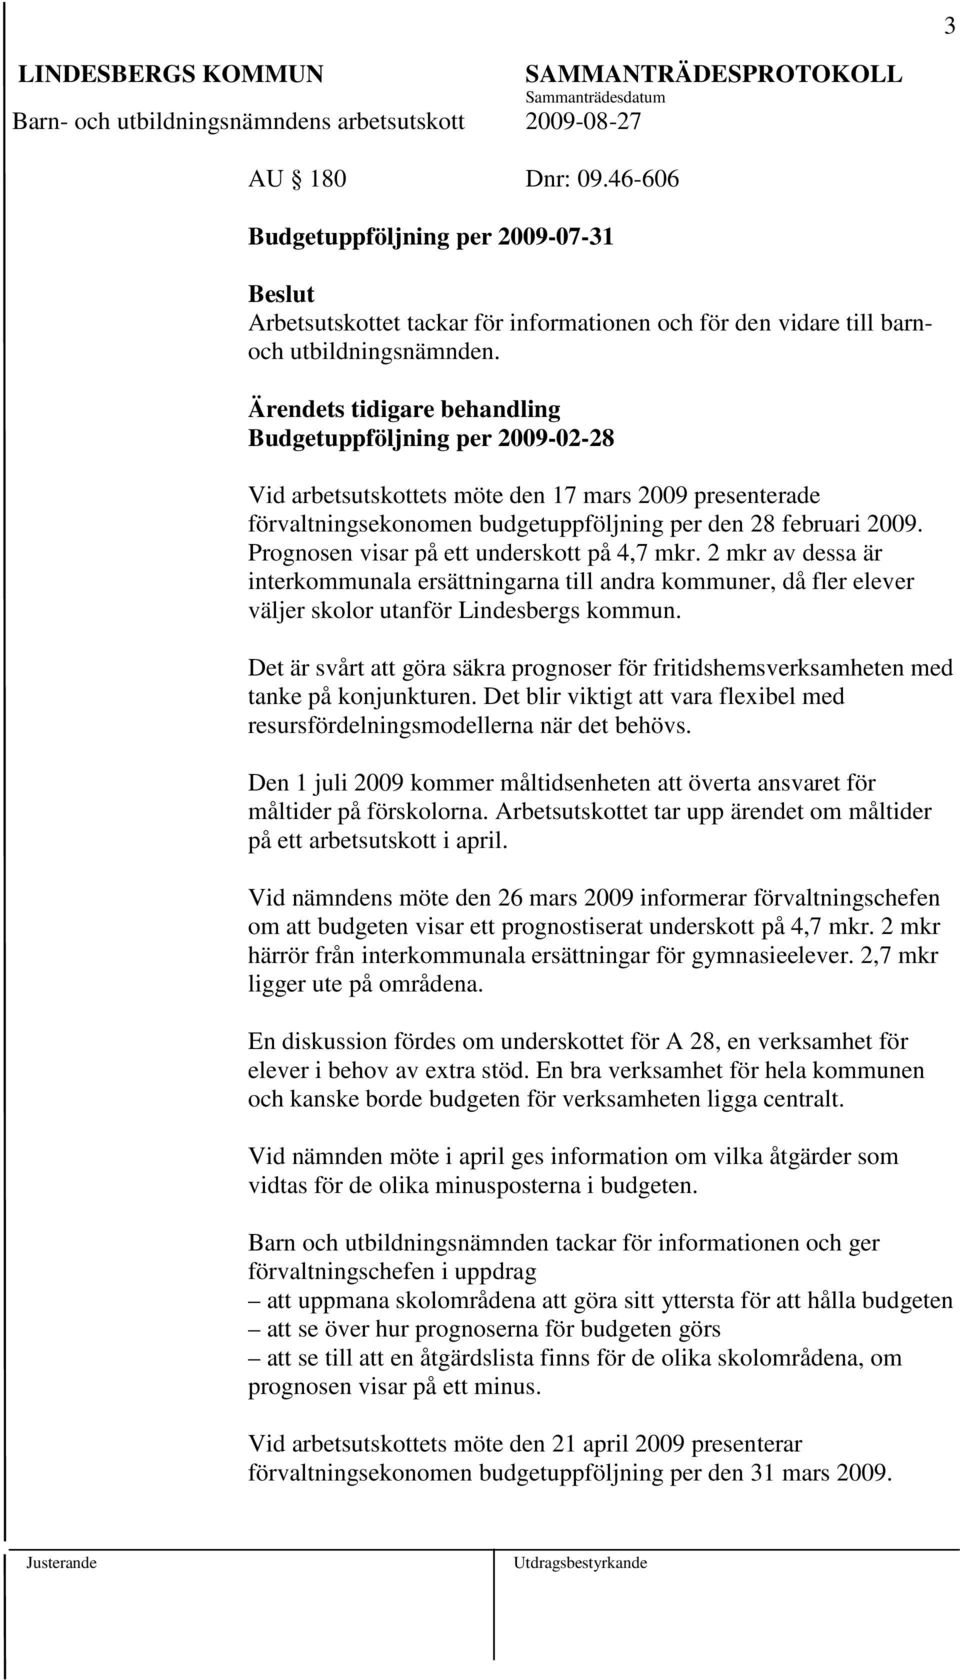 Prognosen visar på ett underskott på 4,7 mkr. 2 mkr av dessa är interkommunala ersättningarna till andra kommuner, då fler elever väljer skolor utanför Lindesbergs kommun.